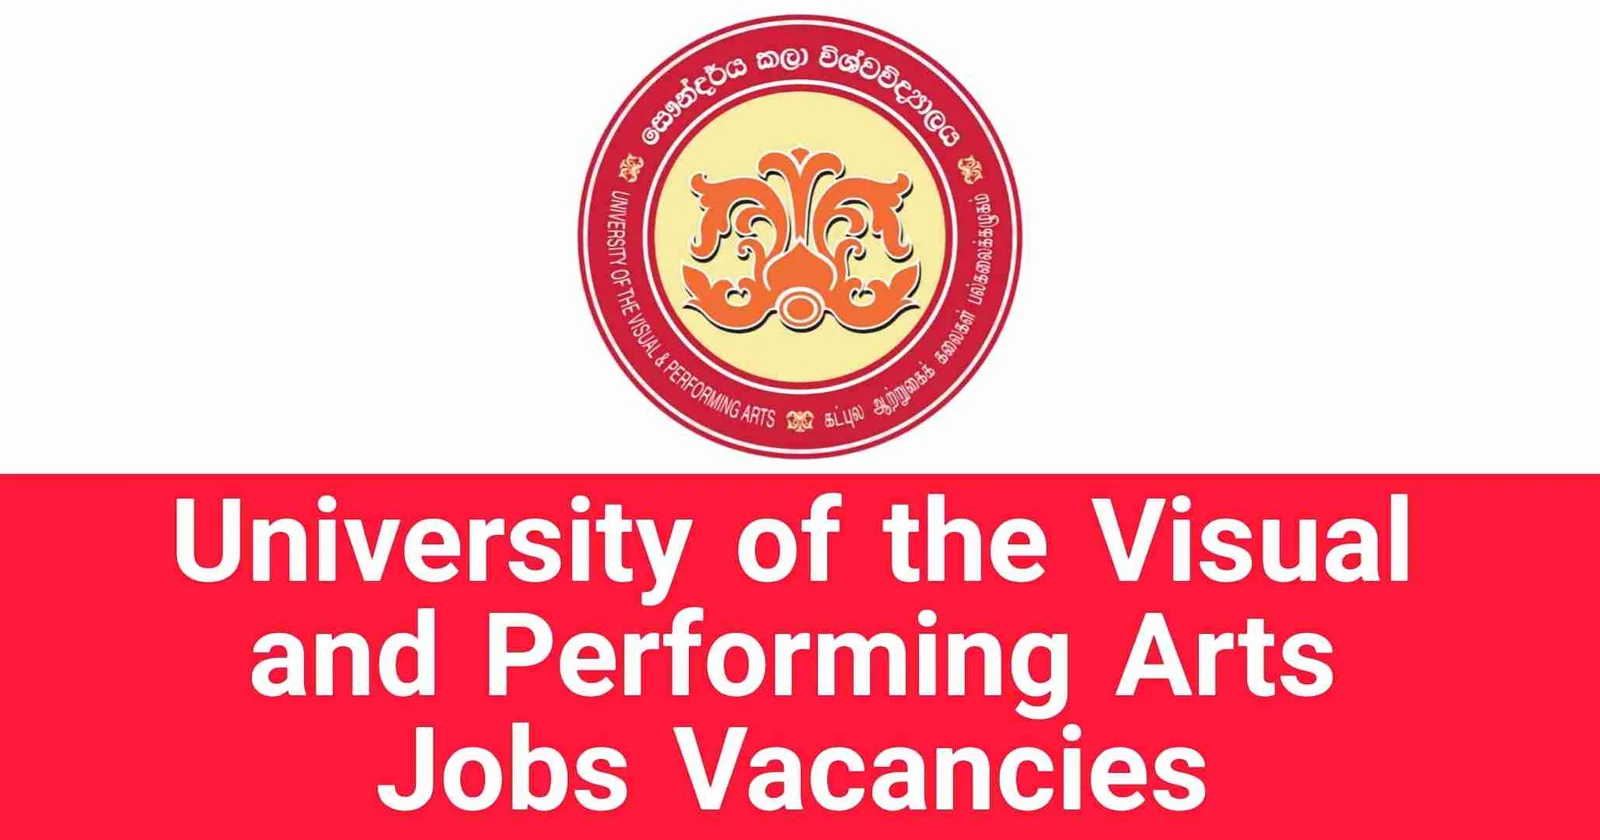 University of the Visual and Performing Arts Jobs Vacancies